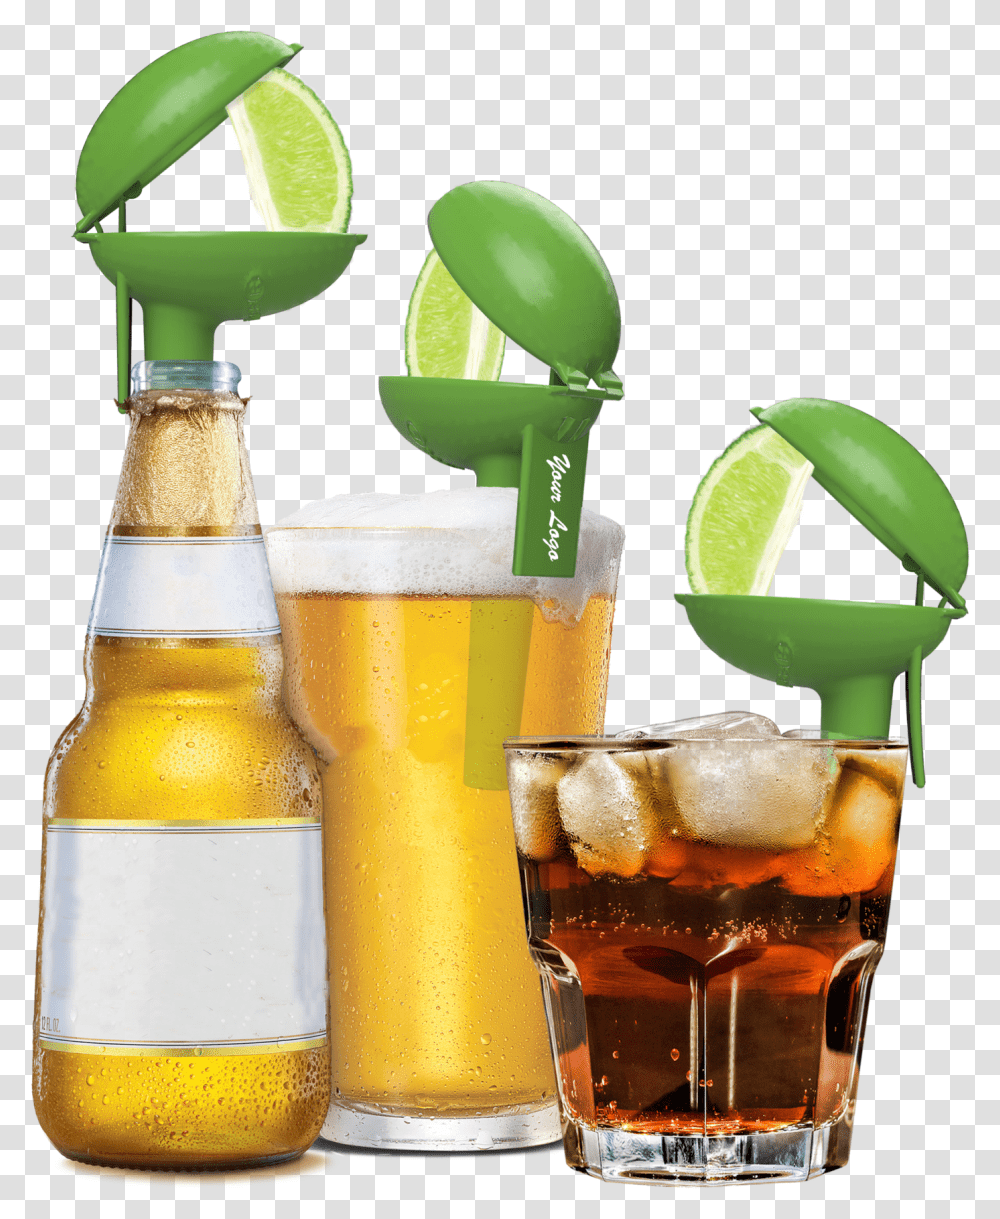 Lemon, Glass, Beer Glass, Alcohol, Beverage Transparent Png